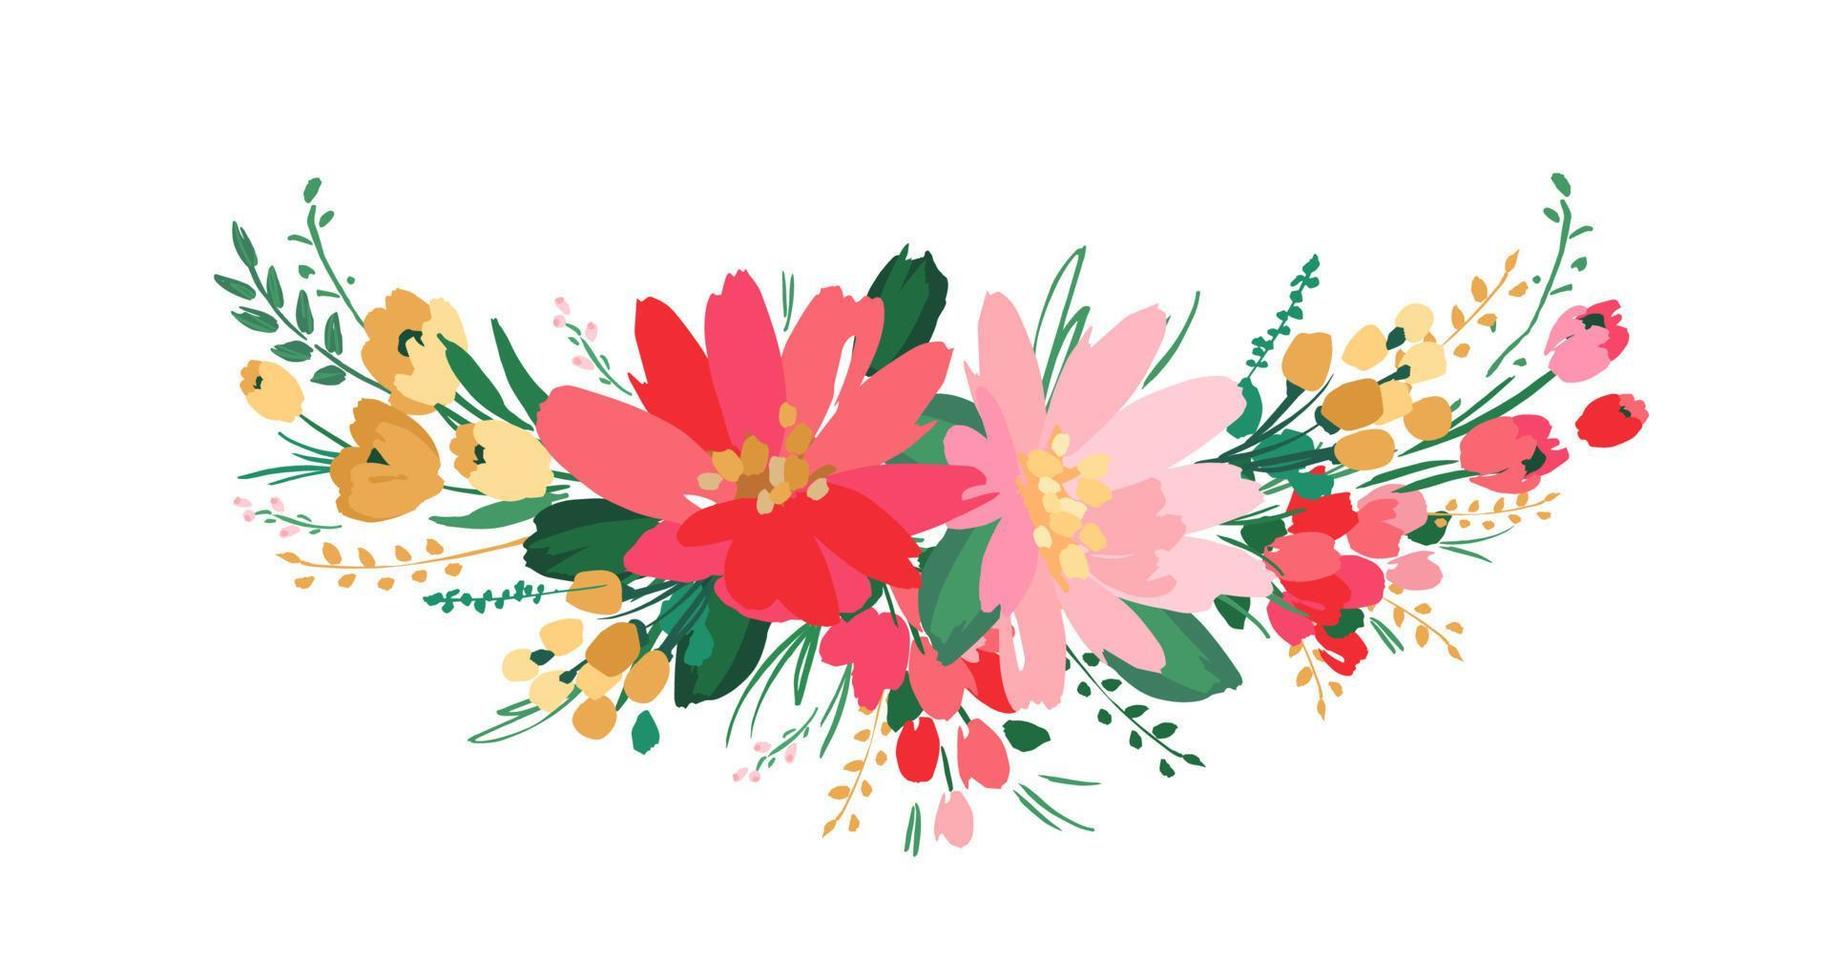 conception florale isolée de vecteur avec des fleurs mignonnes. modèle de carte, affiche, flyer, t-shirt, décoration intérieure et autre utilisation.